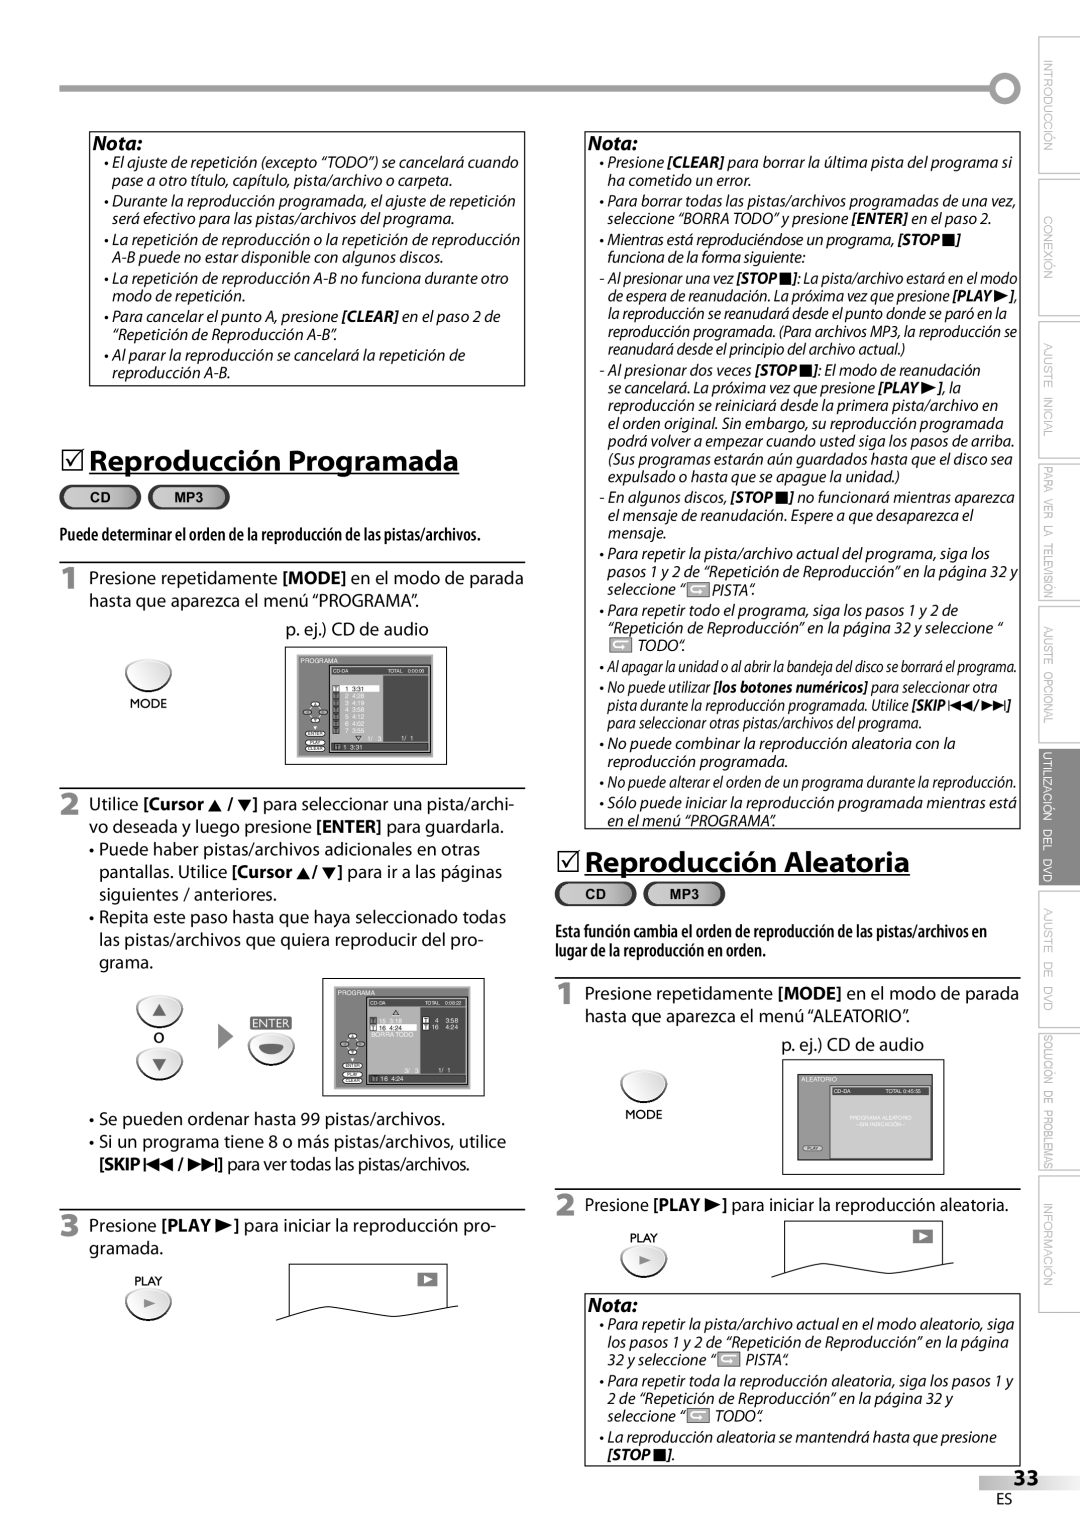 Sylvania LD200SL8 owner manual 5Reproducción Programada, 5Reproducción Aleatoria, Nota, lugar de la reproducción en orden 